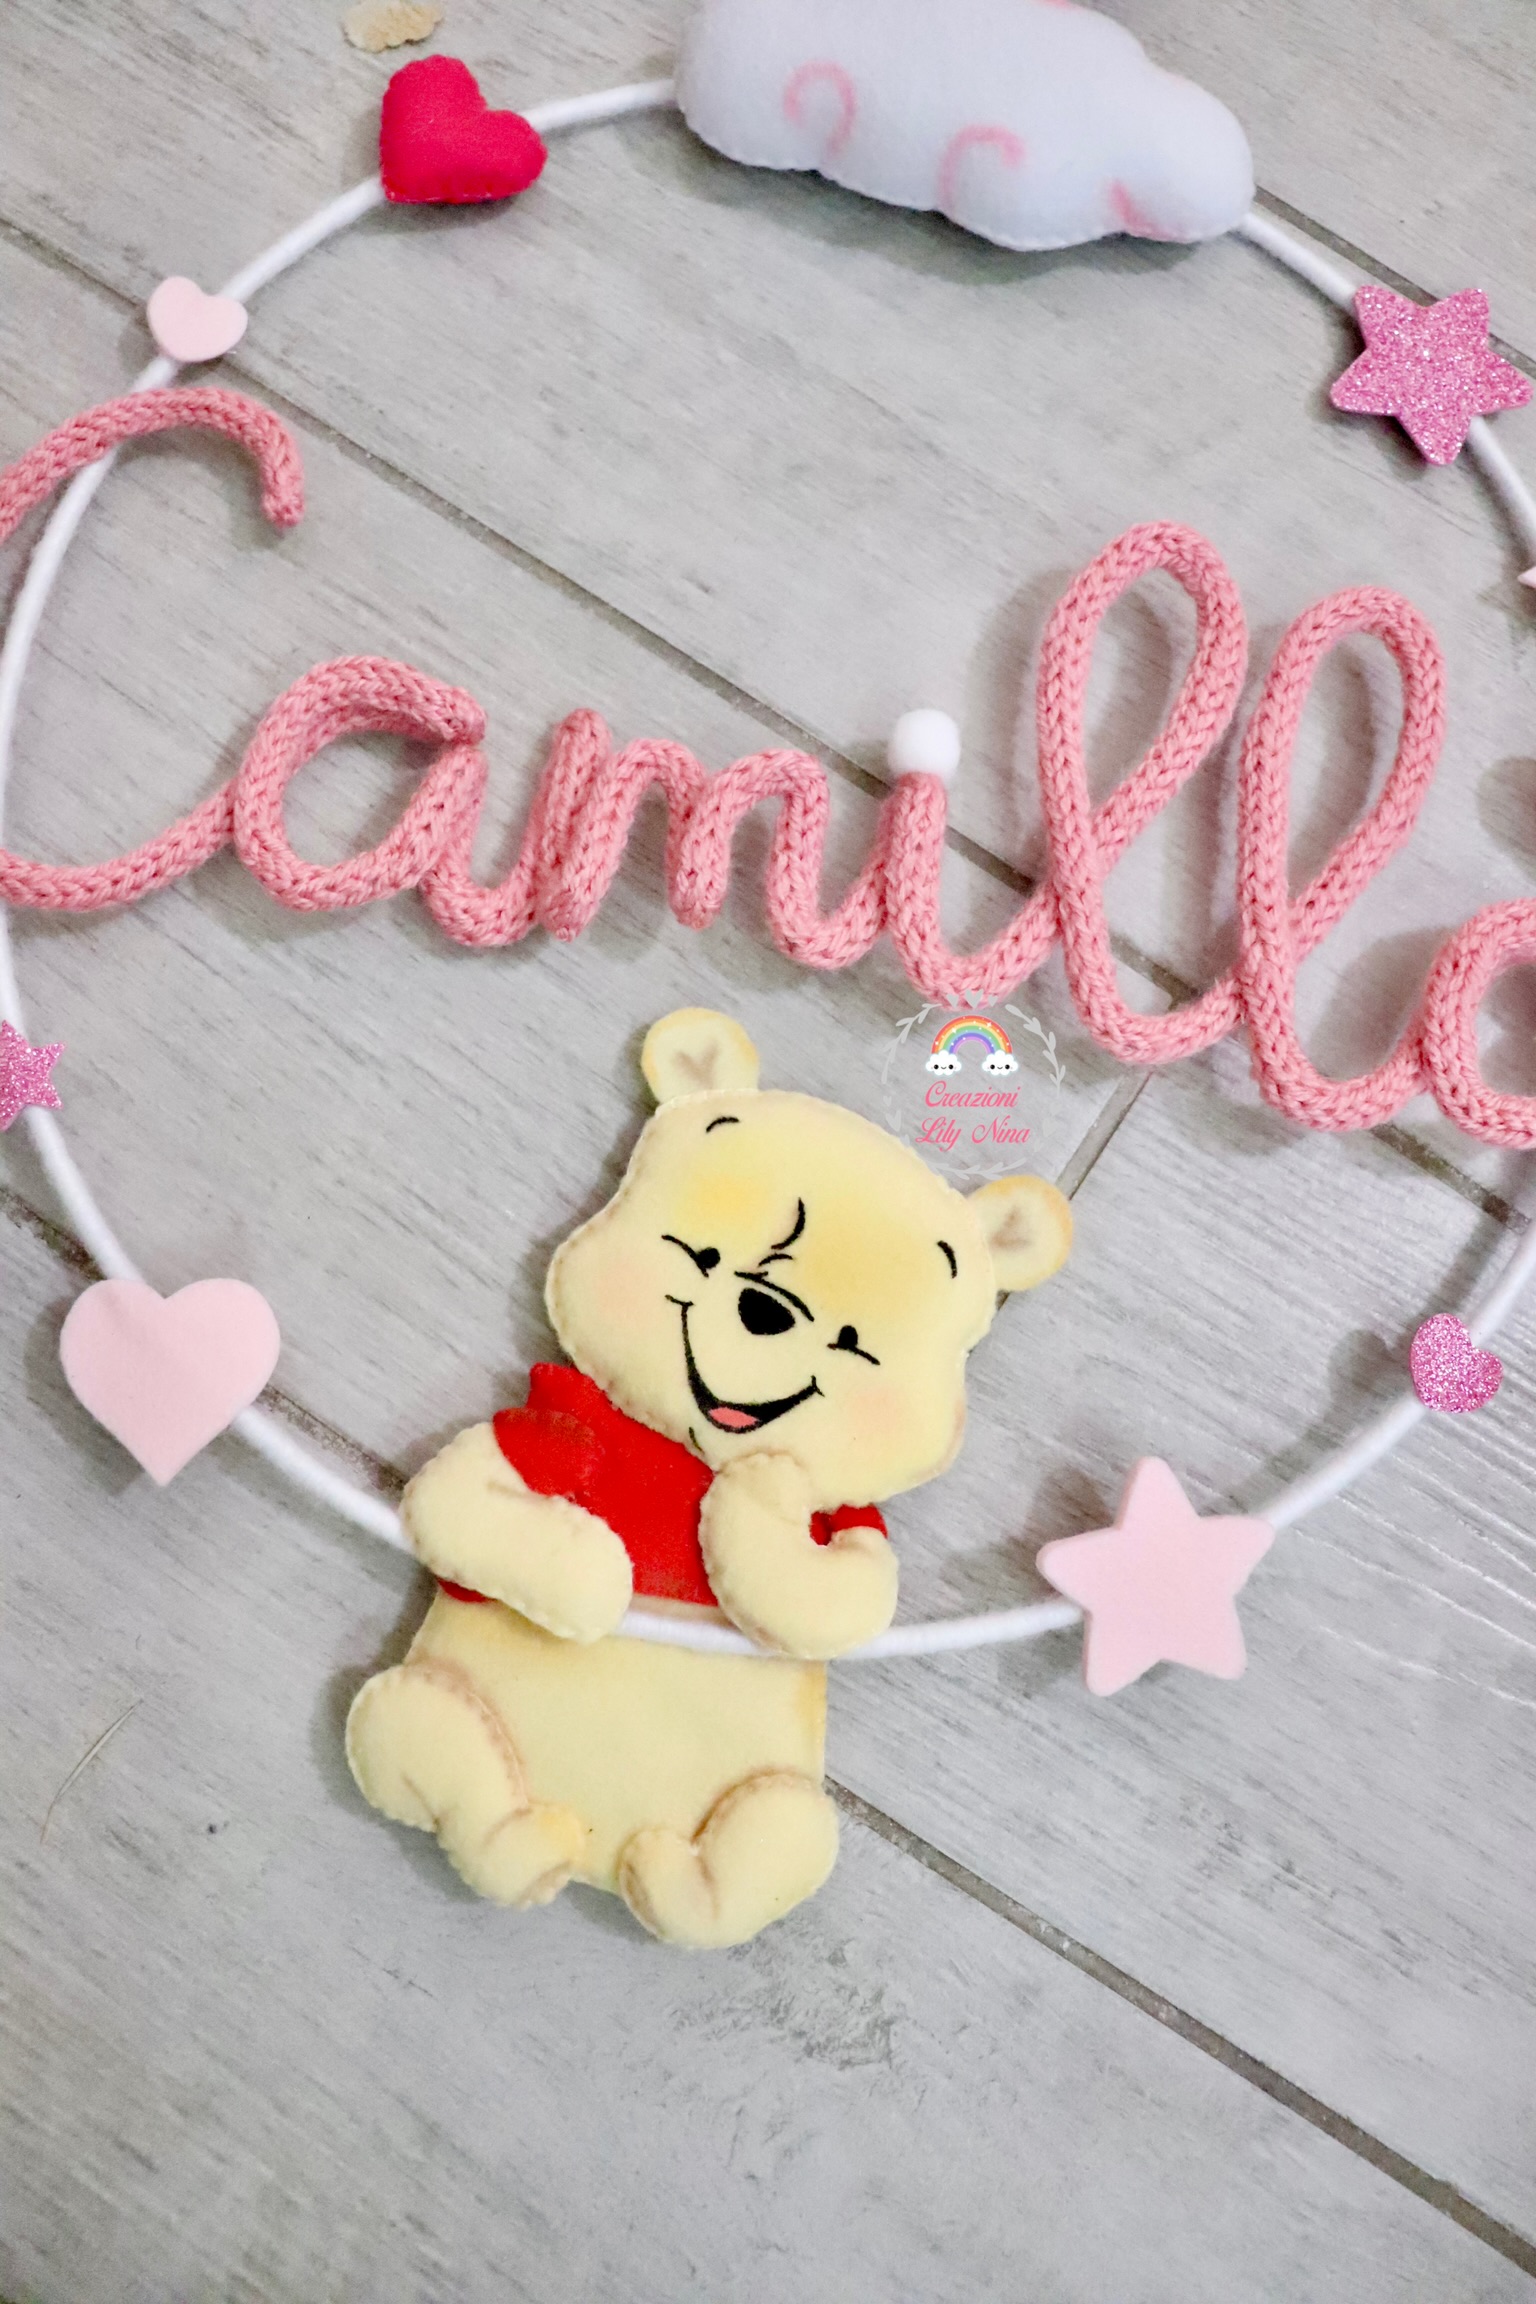 Fiocco tricotin tema Winnie The Pooh con nome Camilla